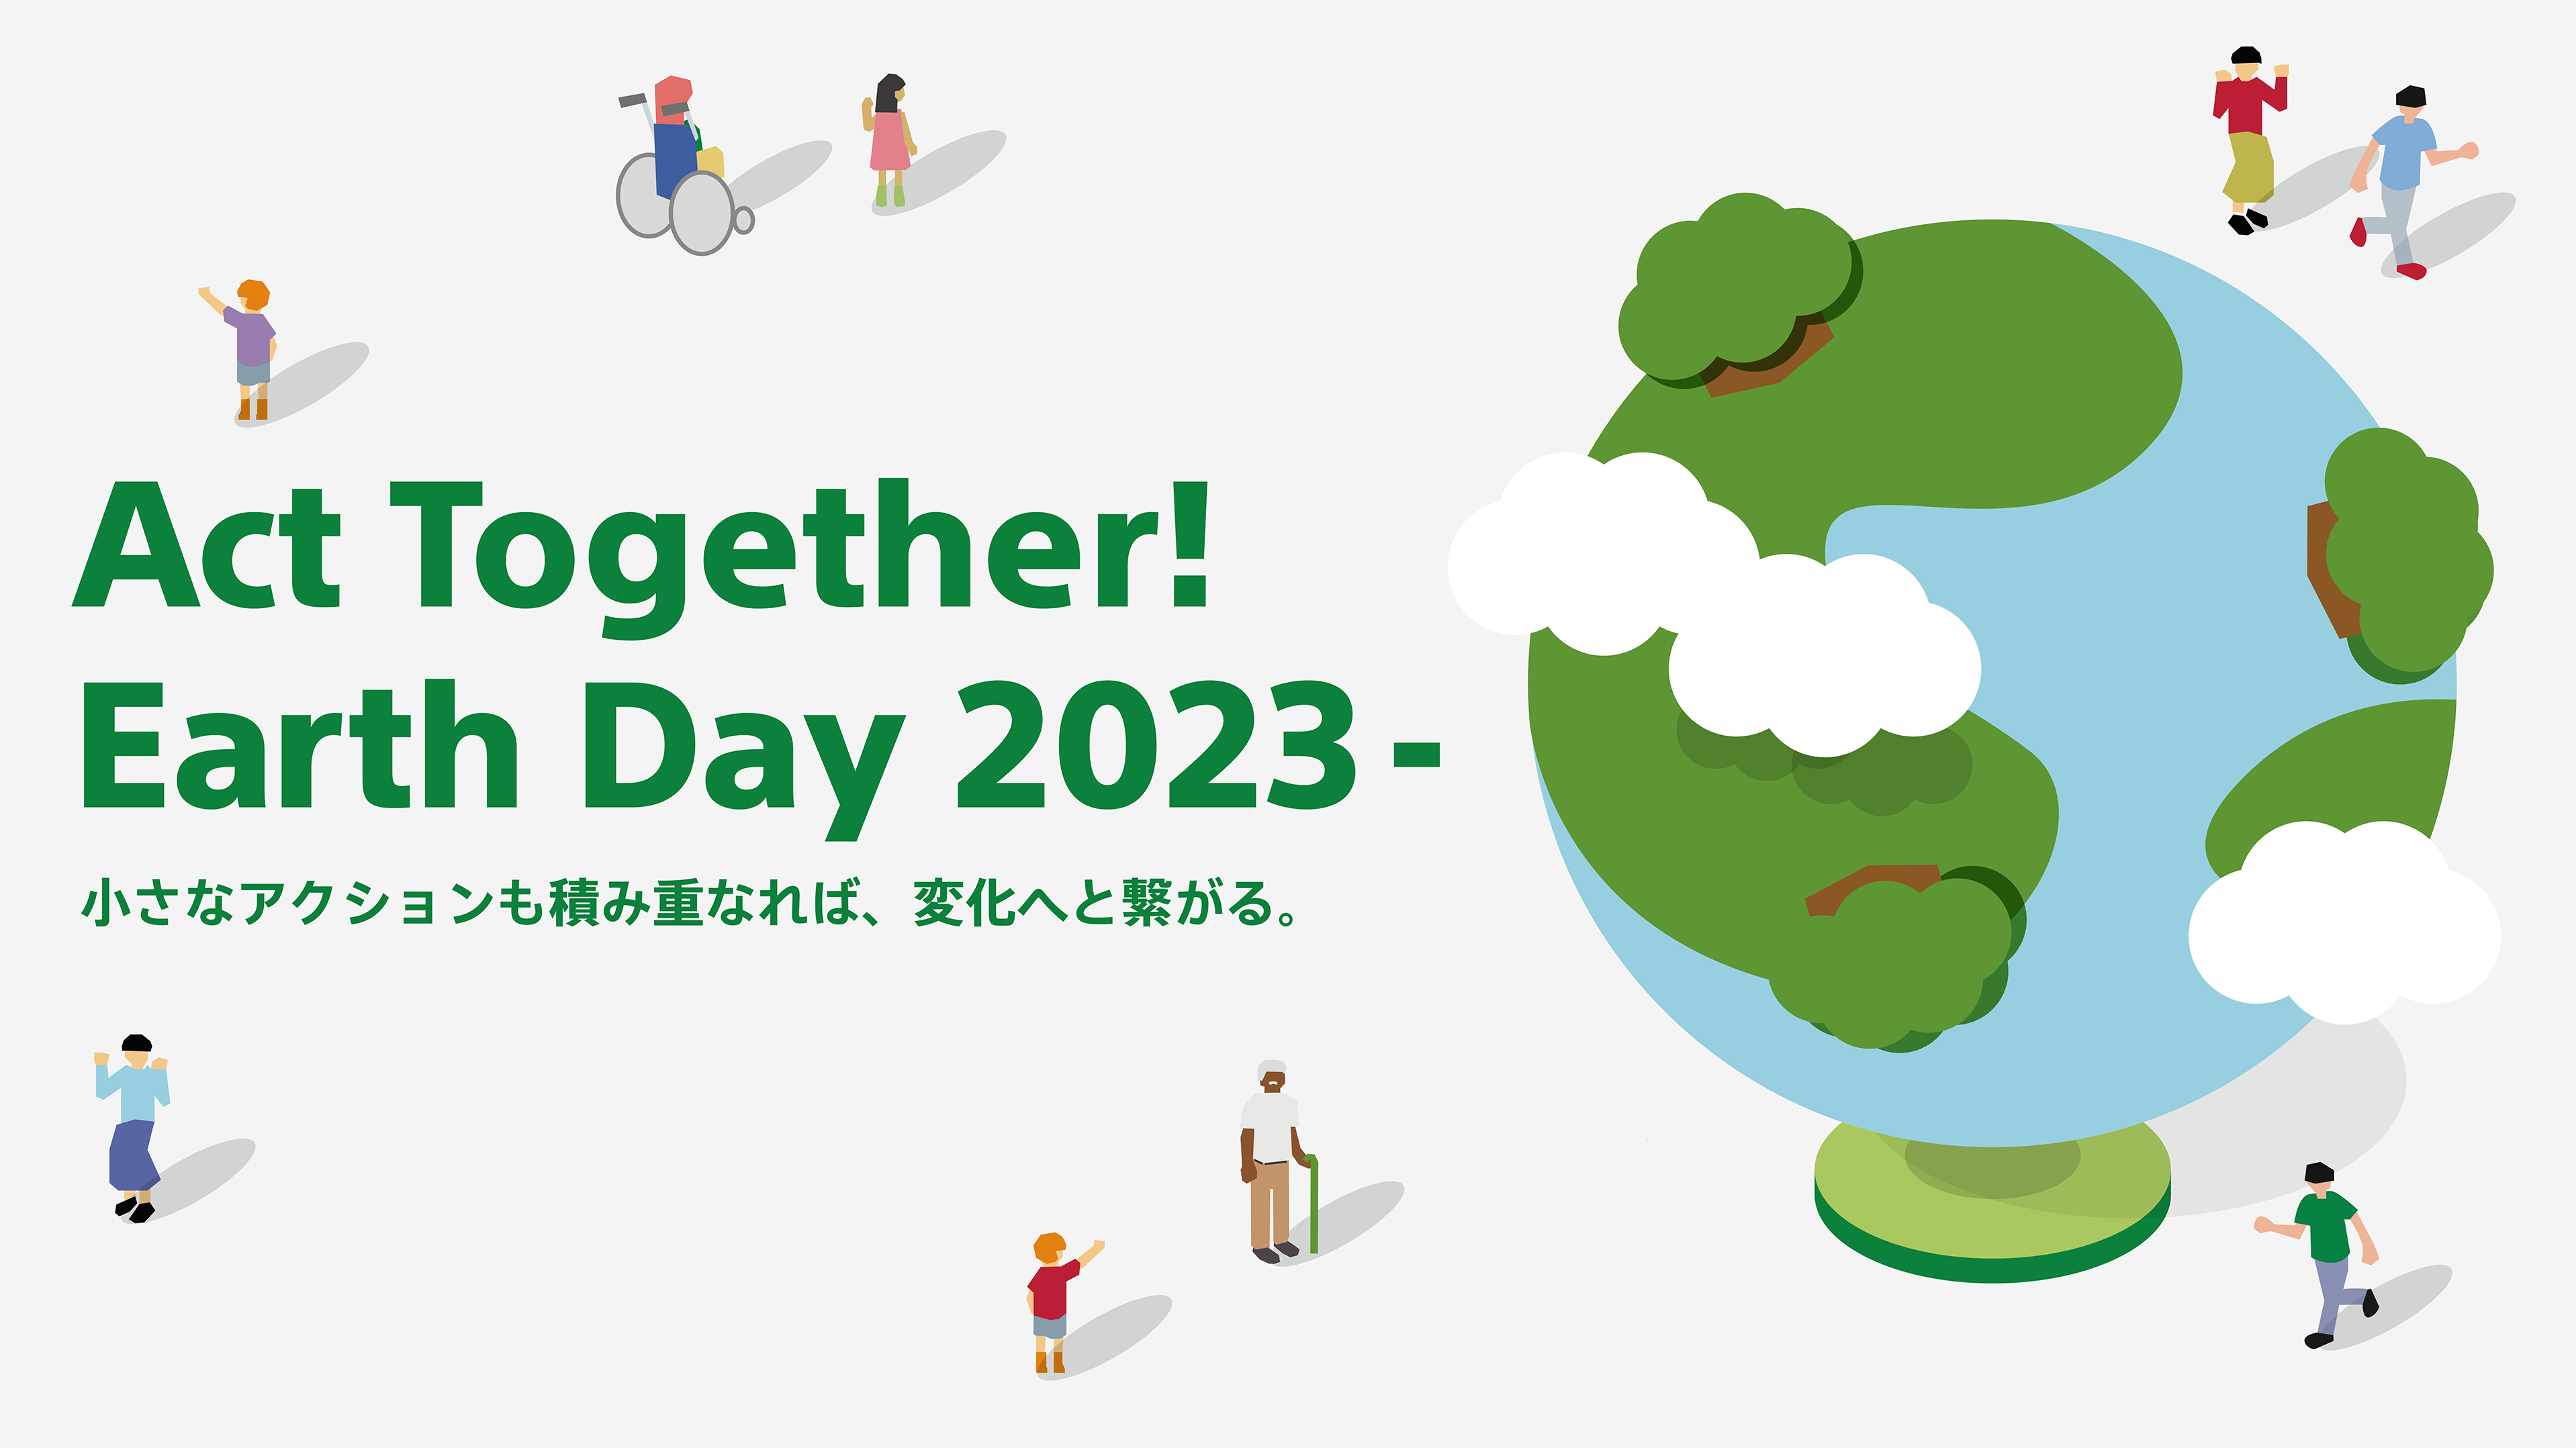 地球とさまざまな人のイラストが描かれている。「Act Together! Earth Day 2023- 小さなアクションも積み重なれば、変化へと繋がる。」と文字が書いてある。